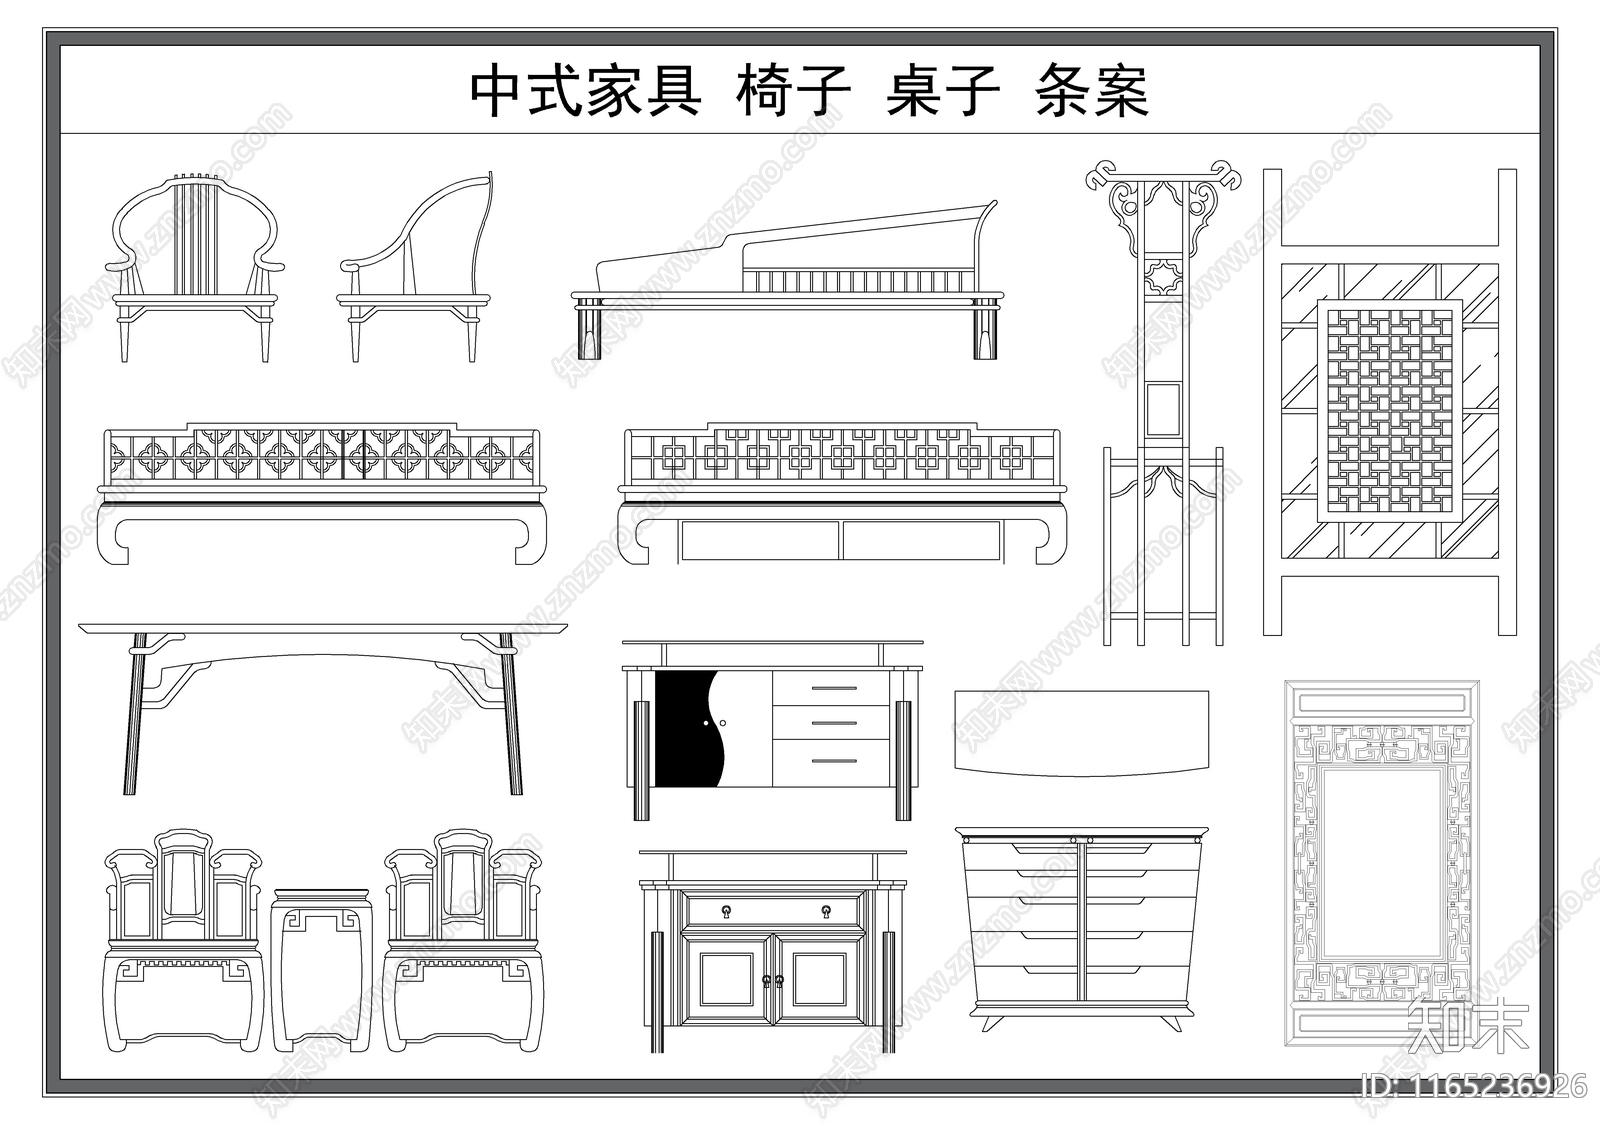 新中式中式综合家具图库施工图下载【ID:1165236926】